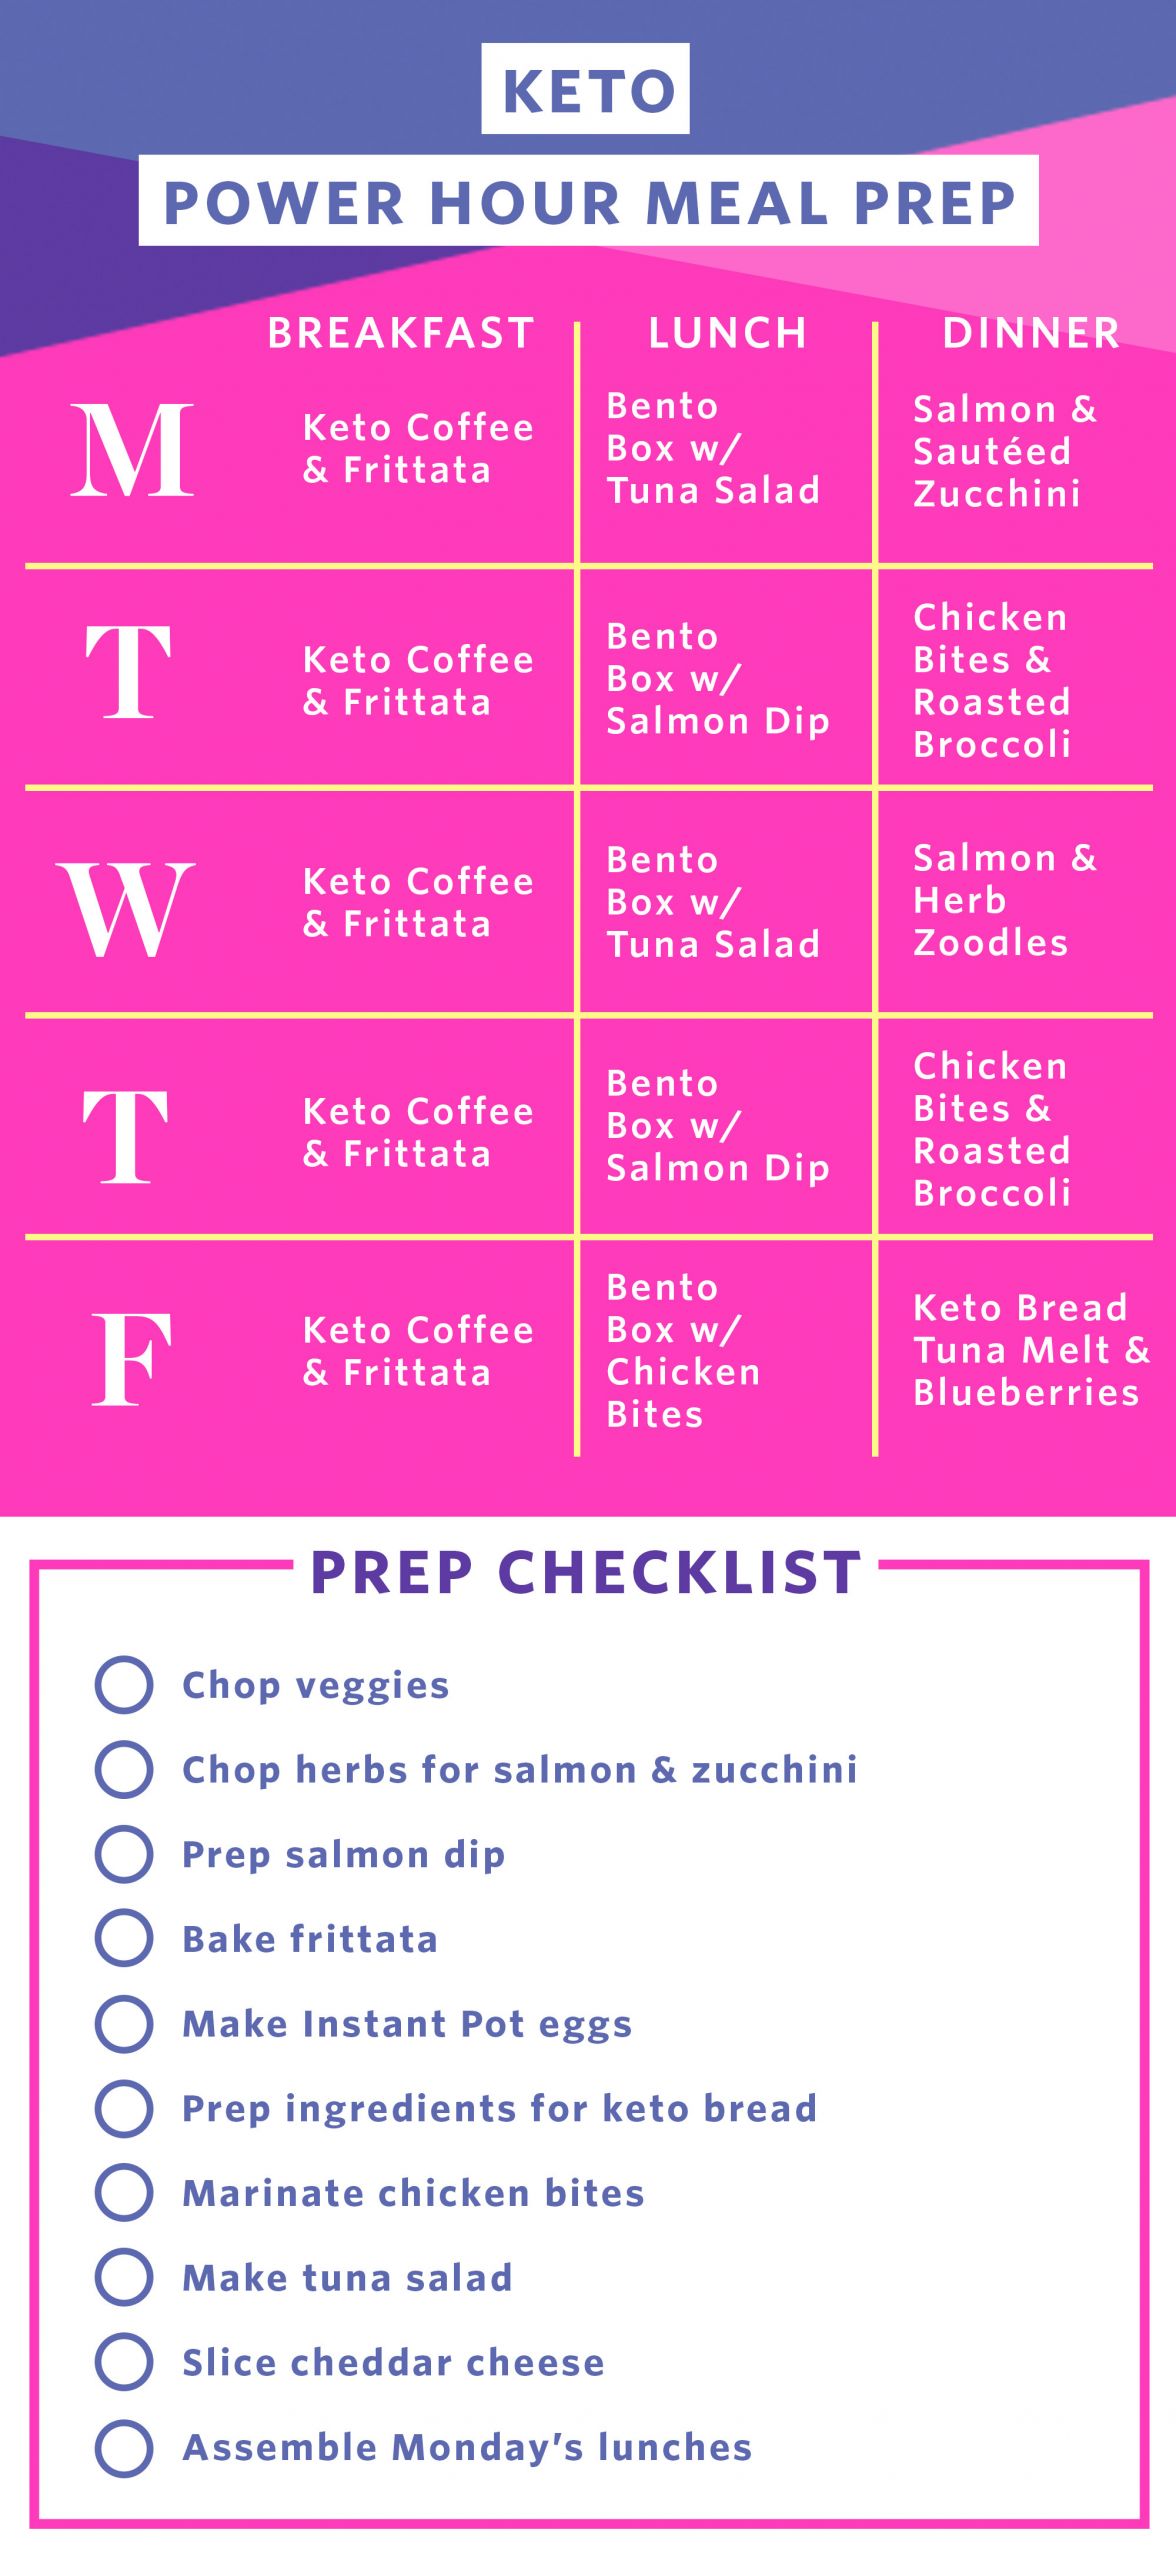 Keto Diet Meal Plan For Beginners
 Best keto t plan for beginners Amy Crenn ktechrebate